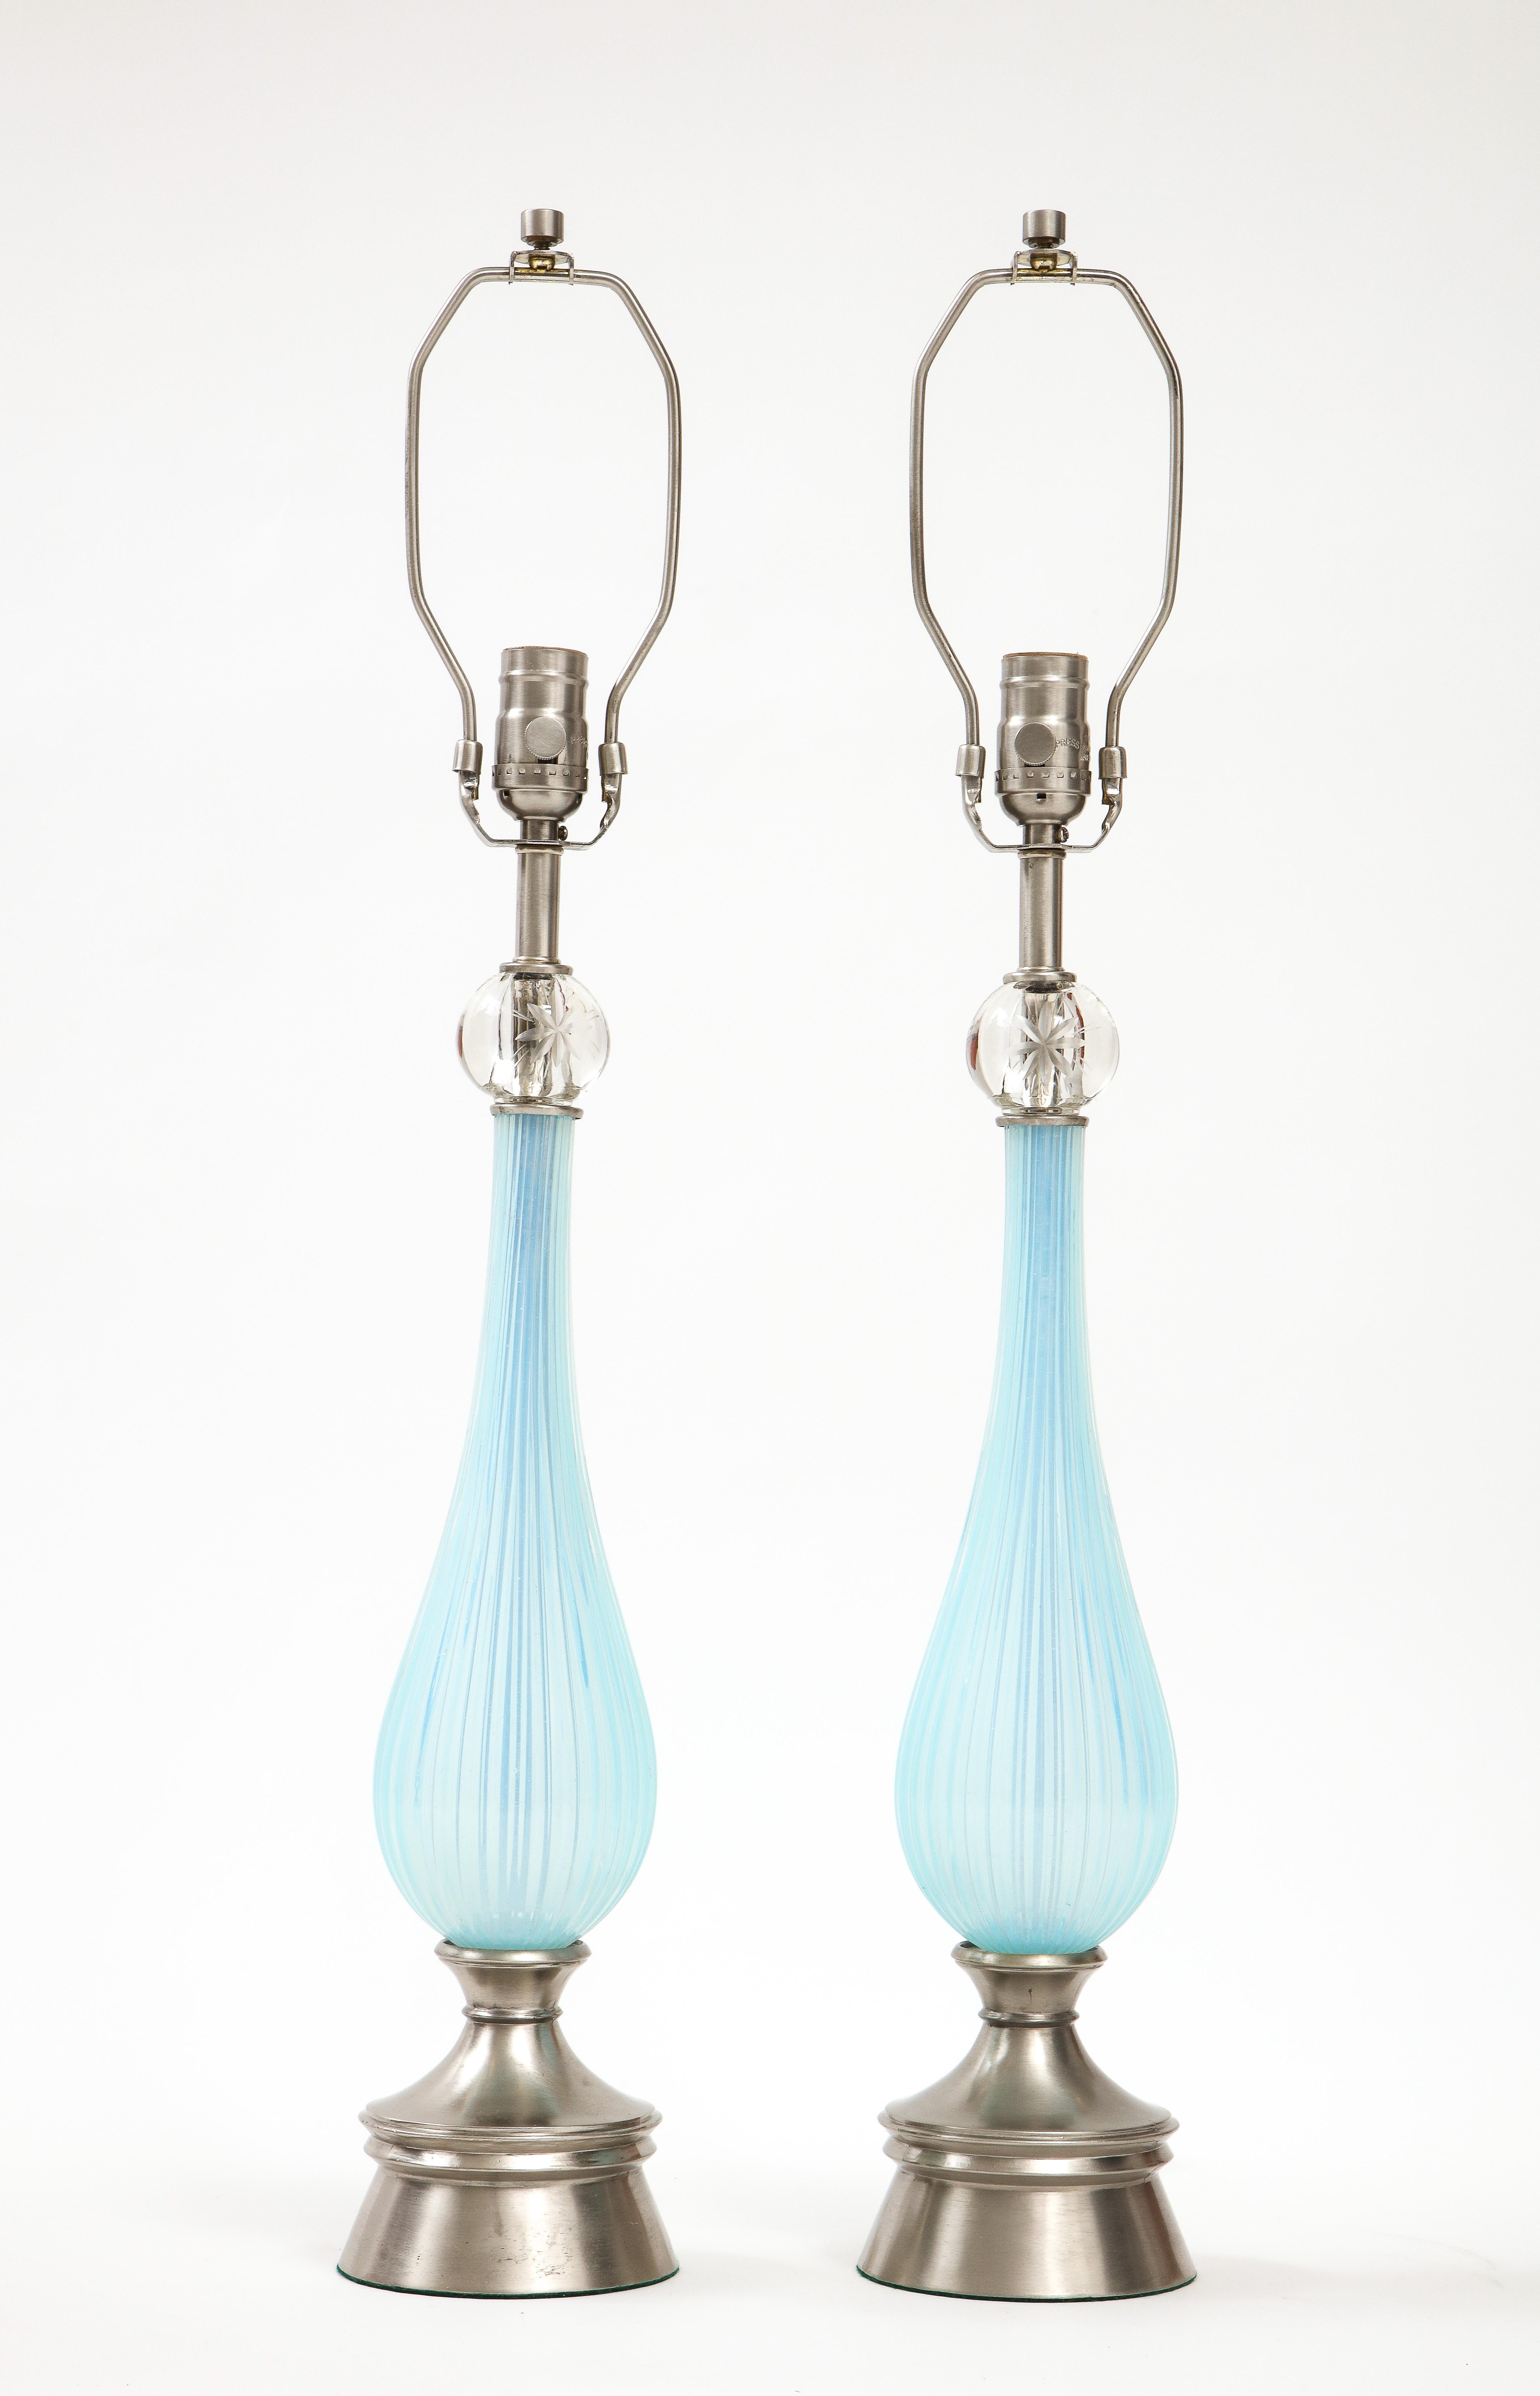 Paire de lampes en verre de Murano du milieu du siècle dernier, de couleur lilas/periwinkle. Les corps en verre présentent un design cannelé qui est surmonté d'un orbe en verre avec un élément étoilé gravé. Les lampes reposent sur une base en nickel